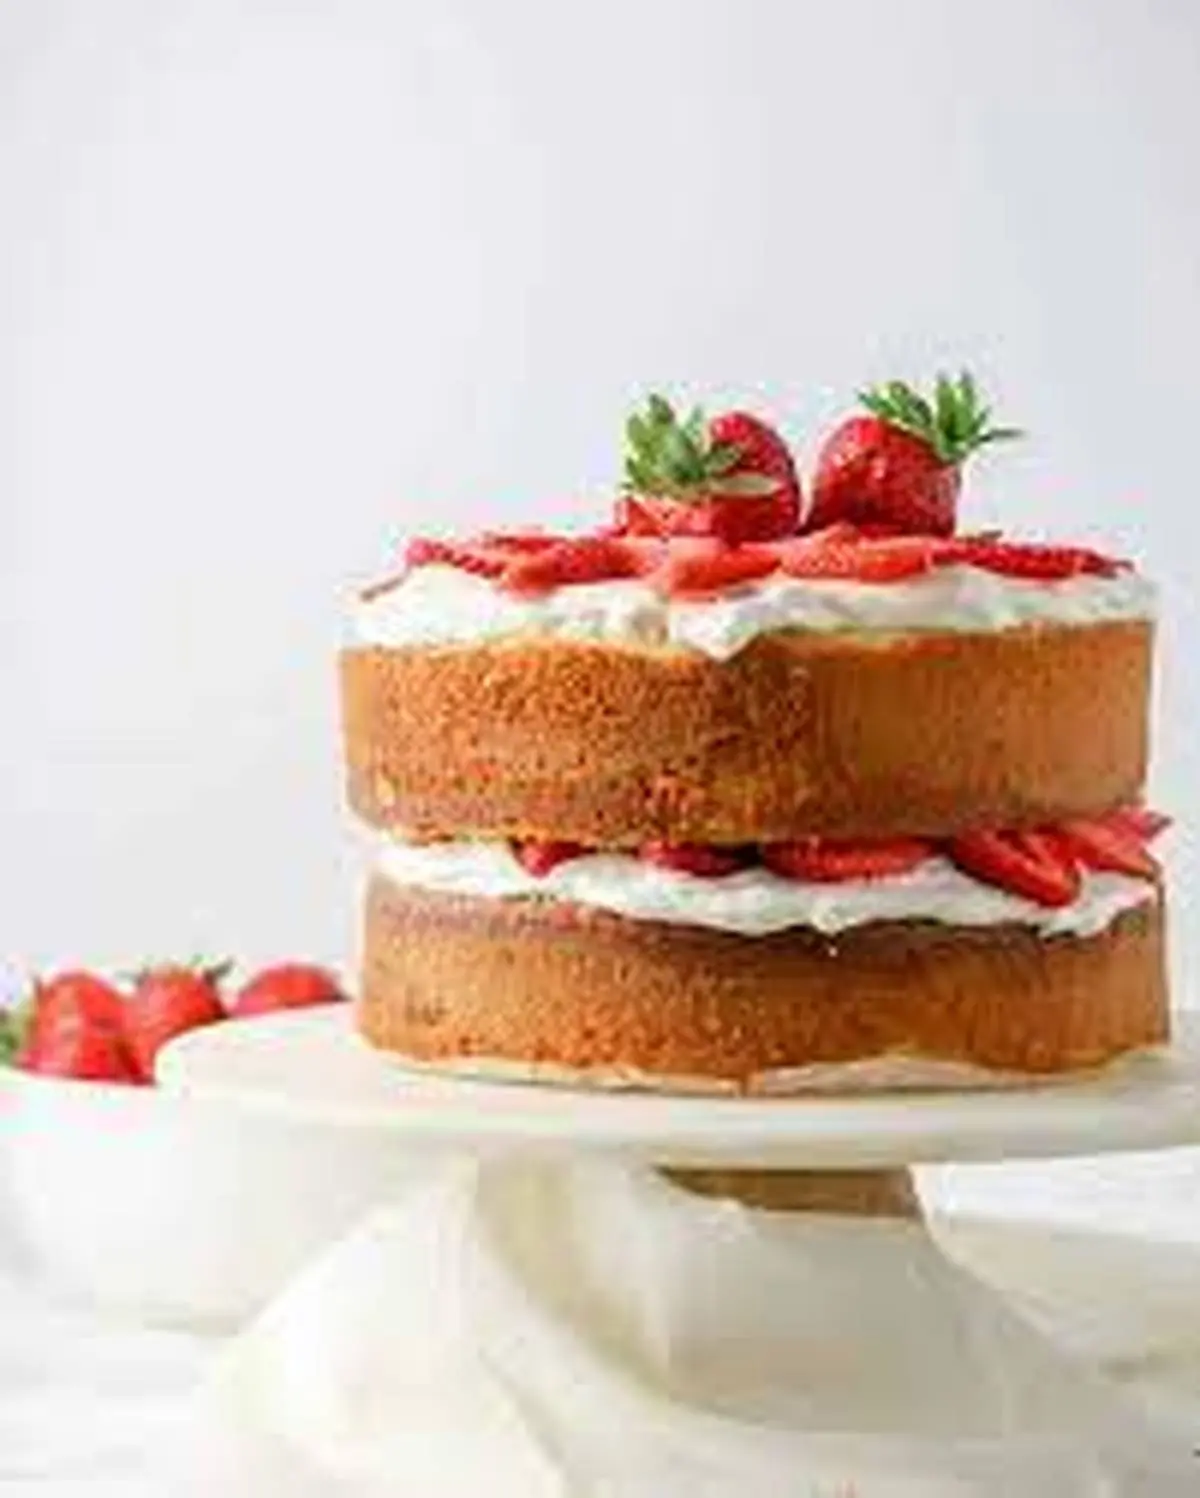 با آرد و شکر یک کیک اسفنجی درست کن شبیه کیک تولد! | ترفند پخت کیک اسفنجی +ویدئو